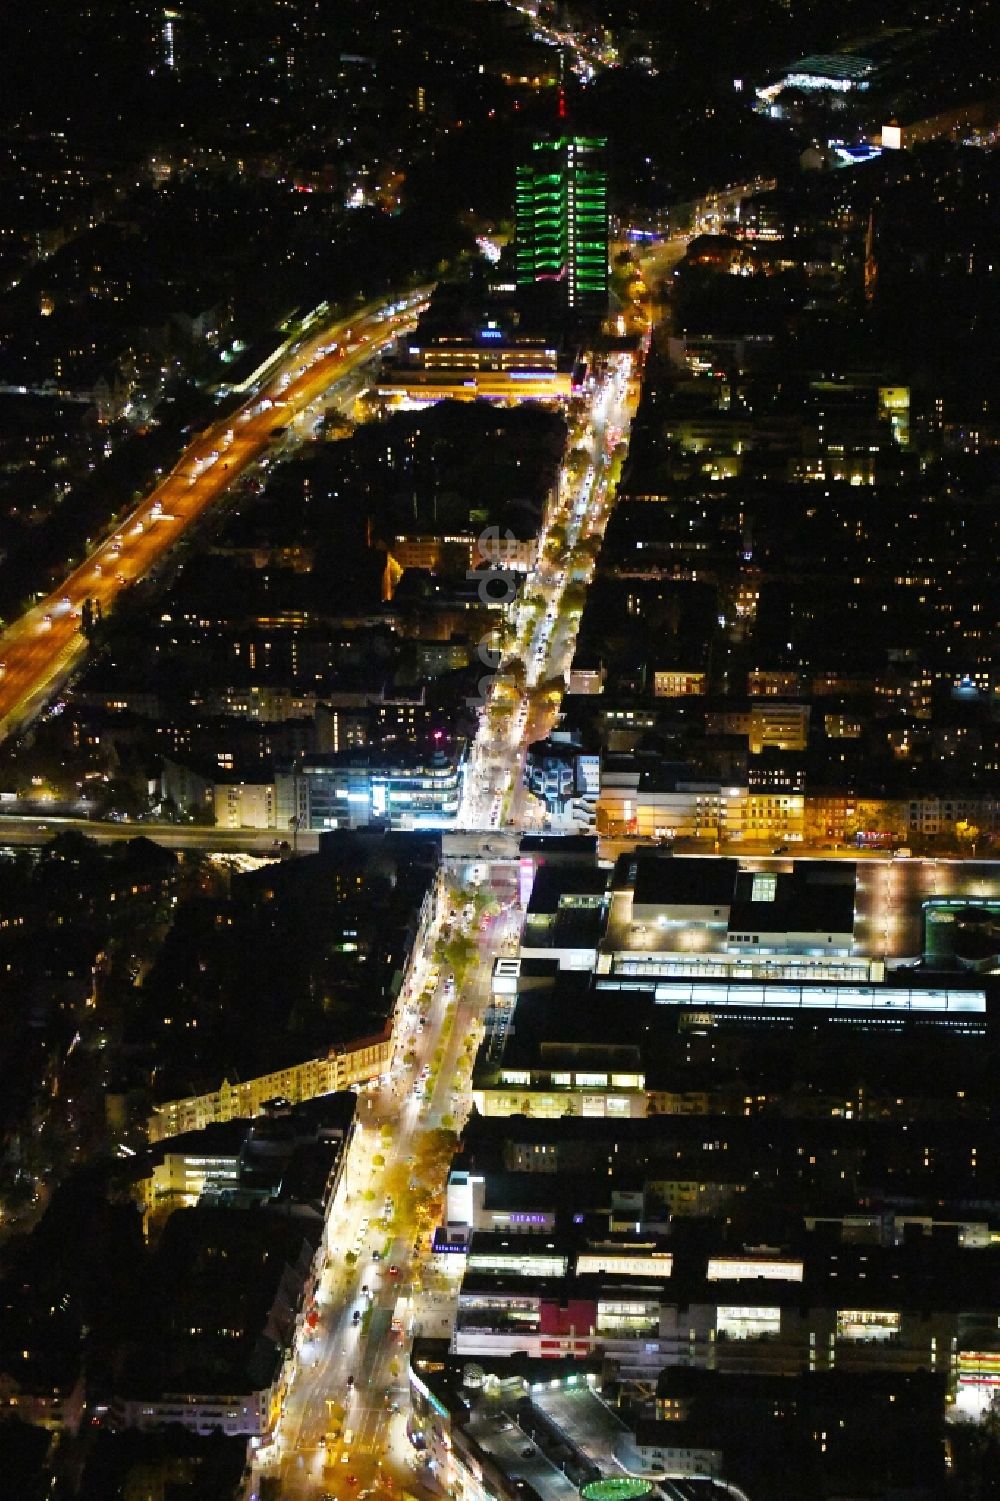 Nacht-Luftaufnahme Berlin - Nachtluftbild Straßenführung der bekannten Flaniermeile und Einkaufsstraße Schloßstraße im Ortsteil Steglitz in Berlin, Deutschland